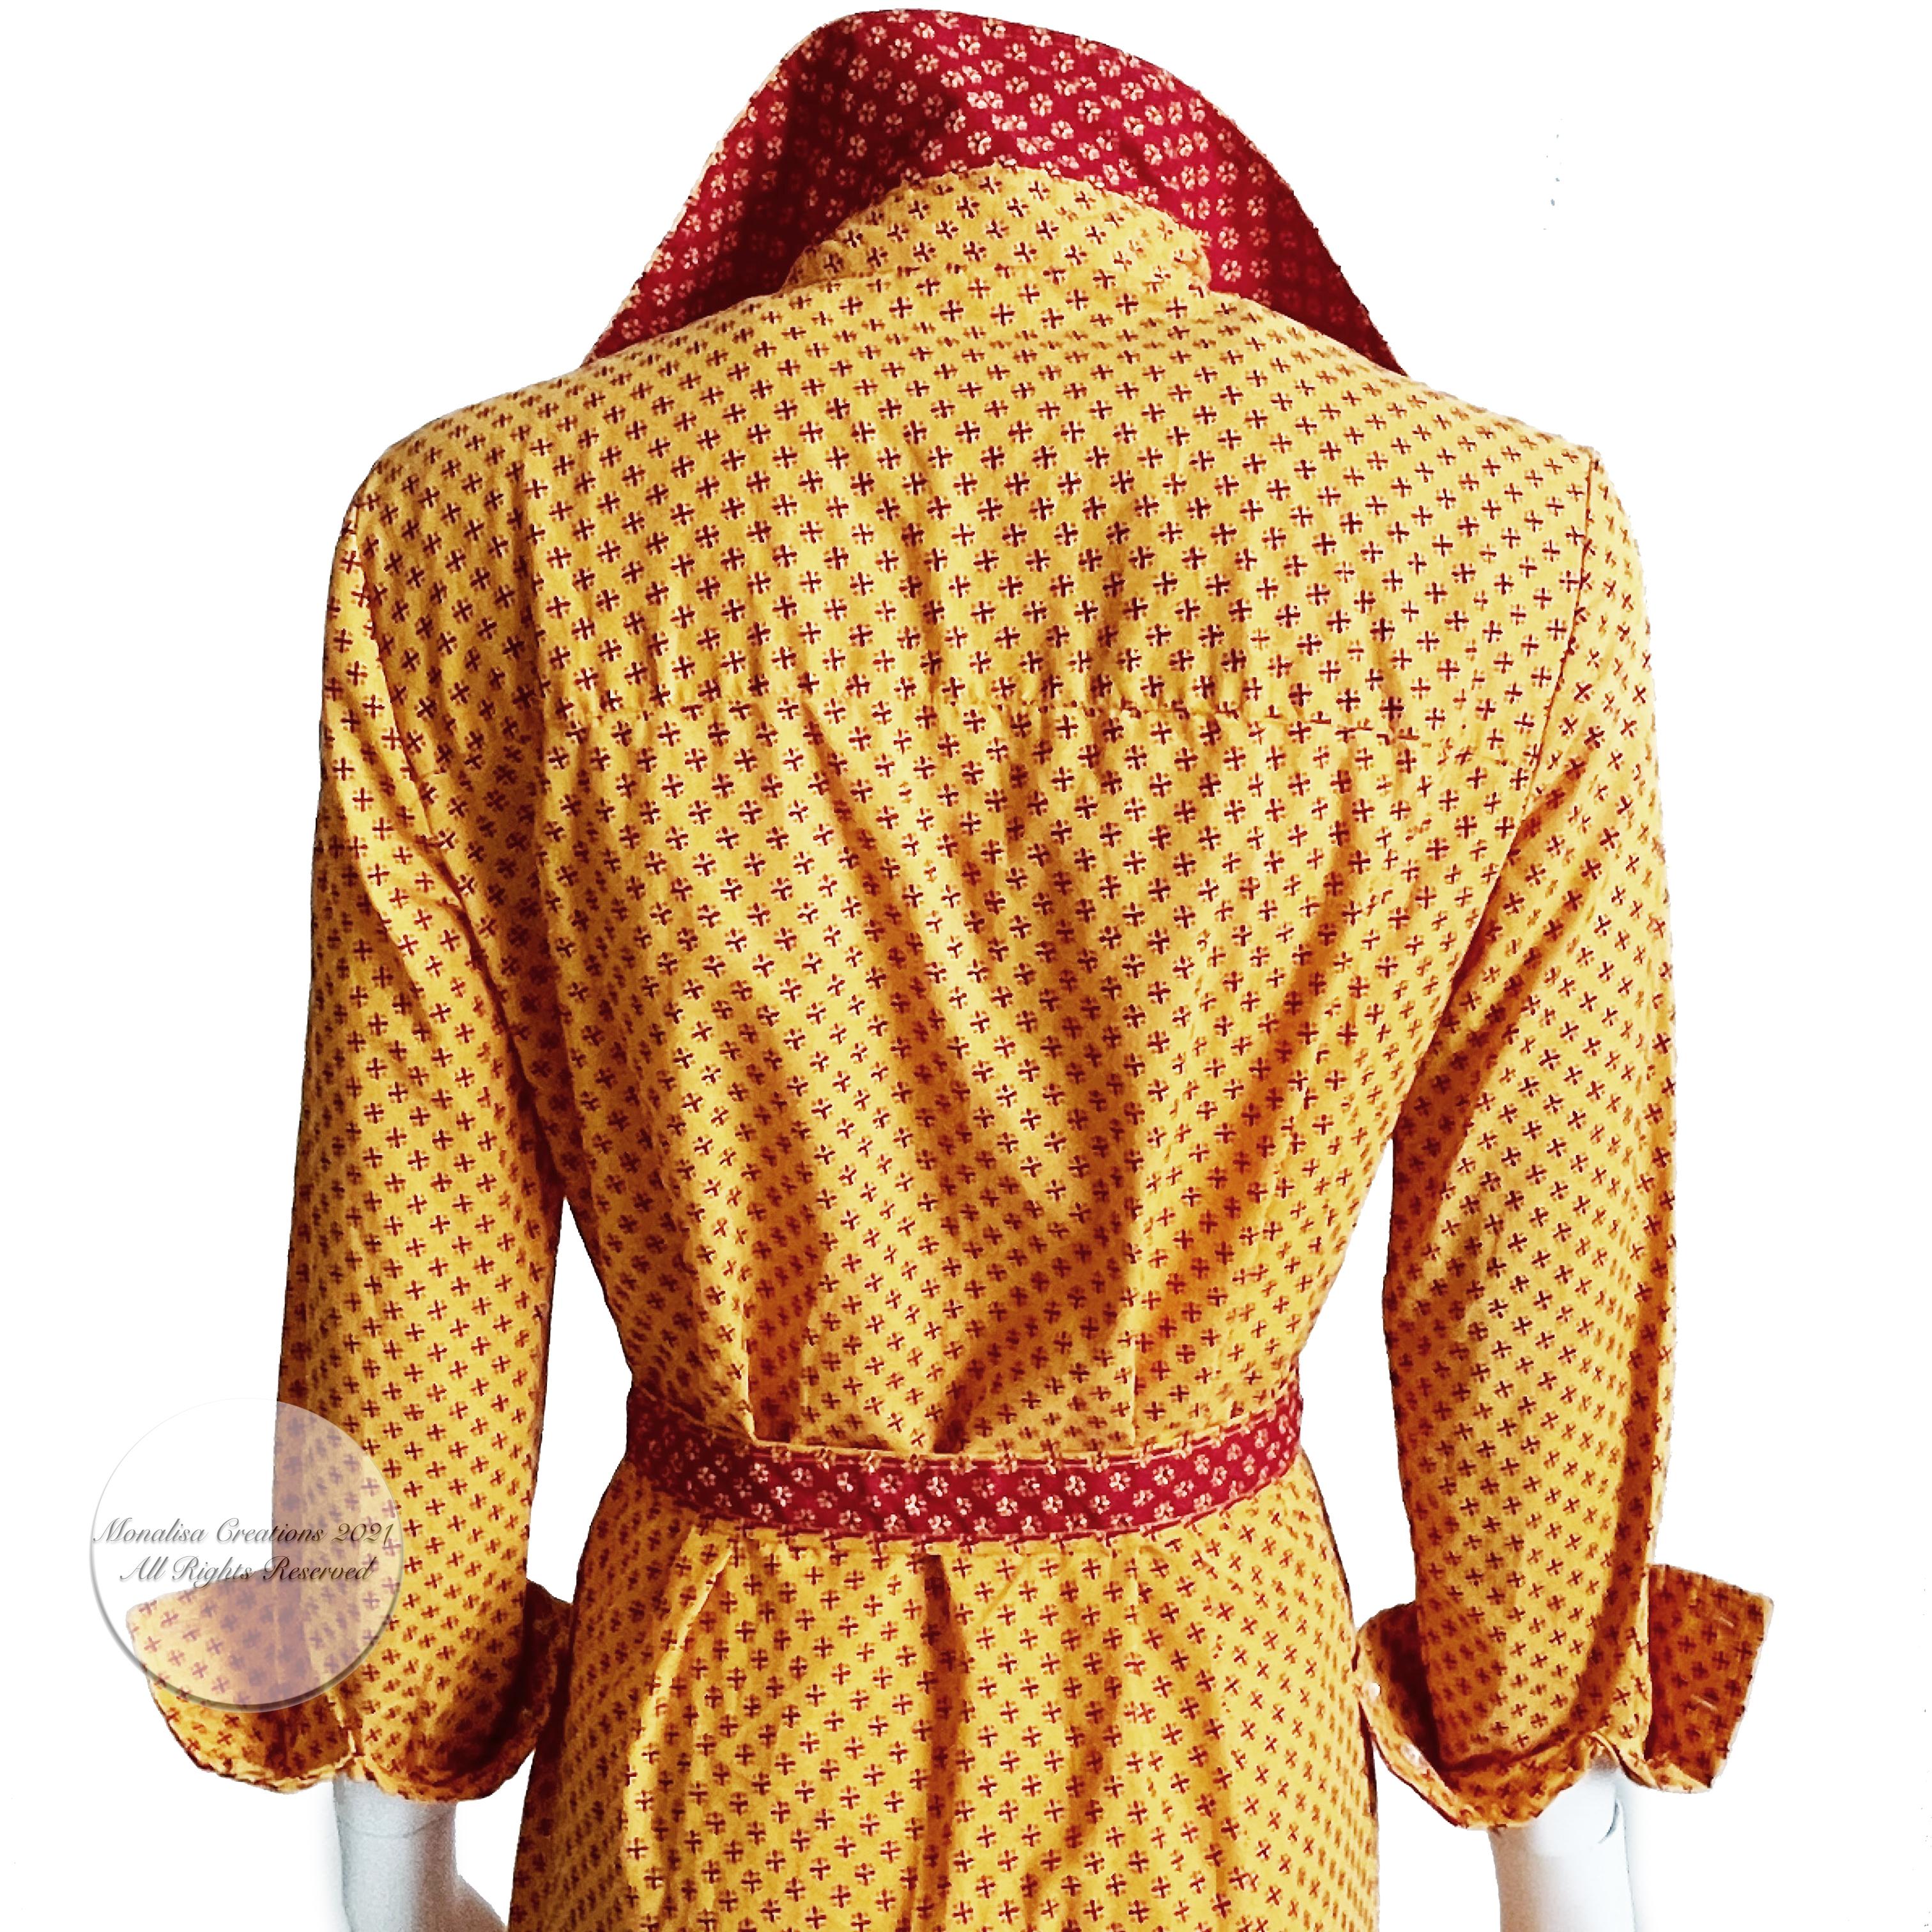 Geoffrey Beene Dress Button Front Cotton Shirtwaist + Belt Bold Daisy Print 70s 4